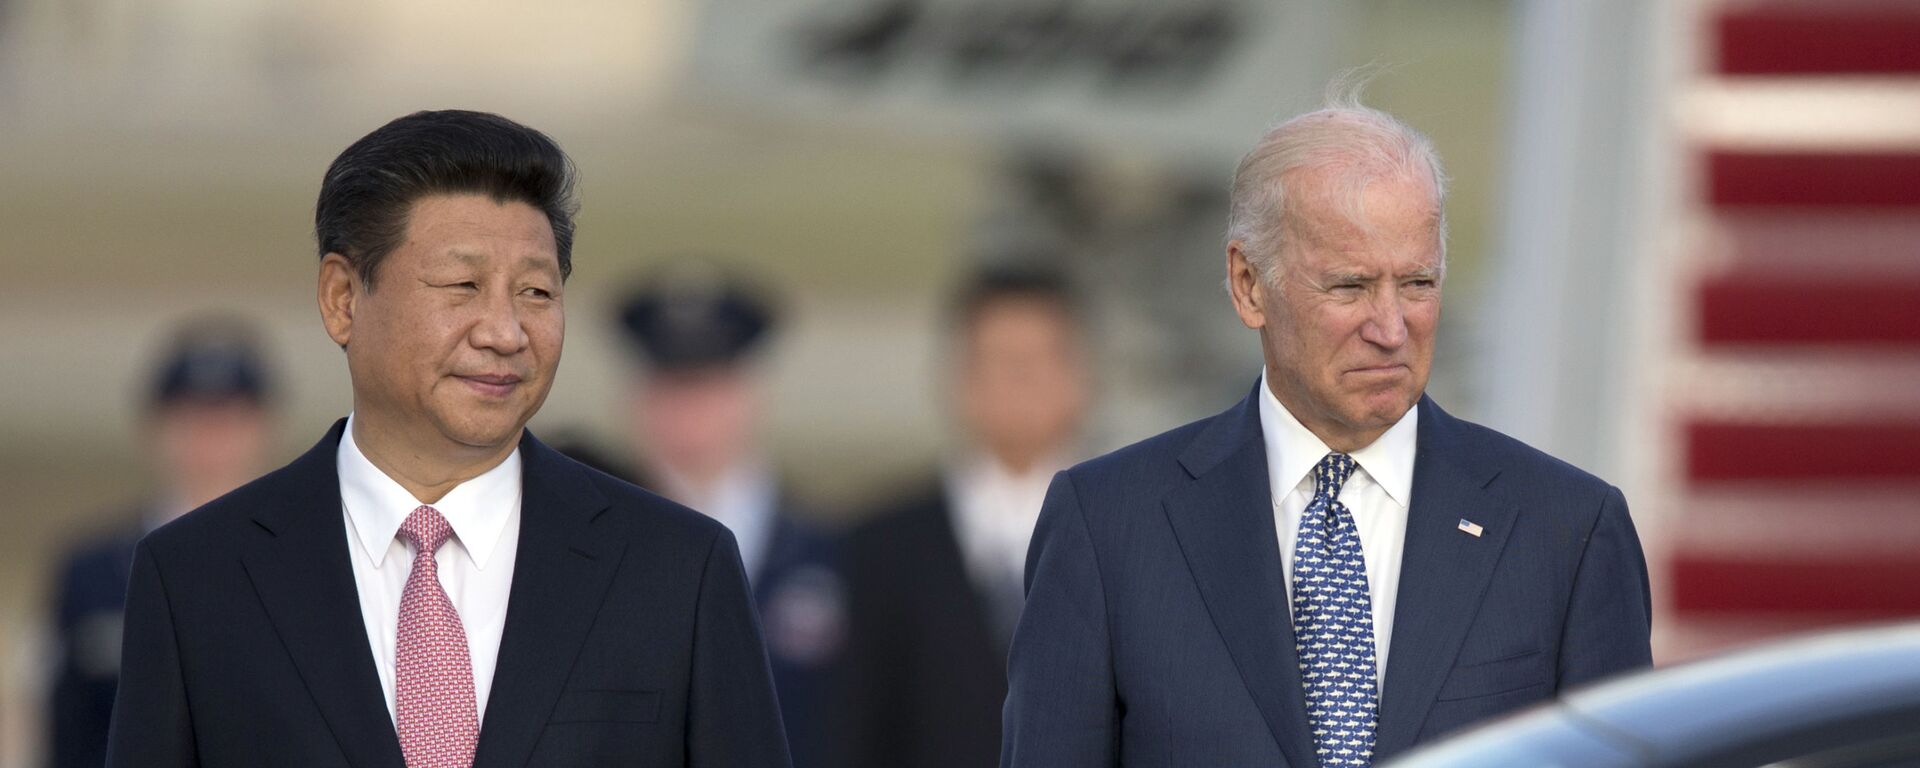 Chủ tịch nước Cộng hòa Nhân dân Trung Hoa Tập Cận Bình và Phó Tổng thống Hoa Kỳ Joe Biden tại Washington, năm 2015. - Sputnik Việt Nam, 1920, 21.09.2021